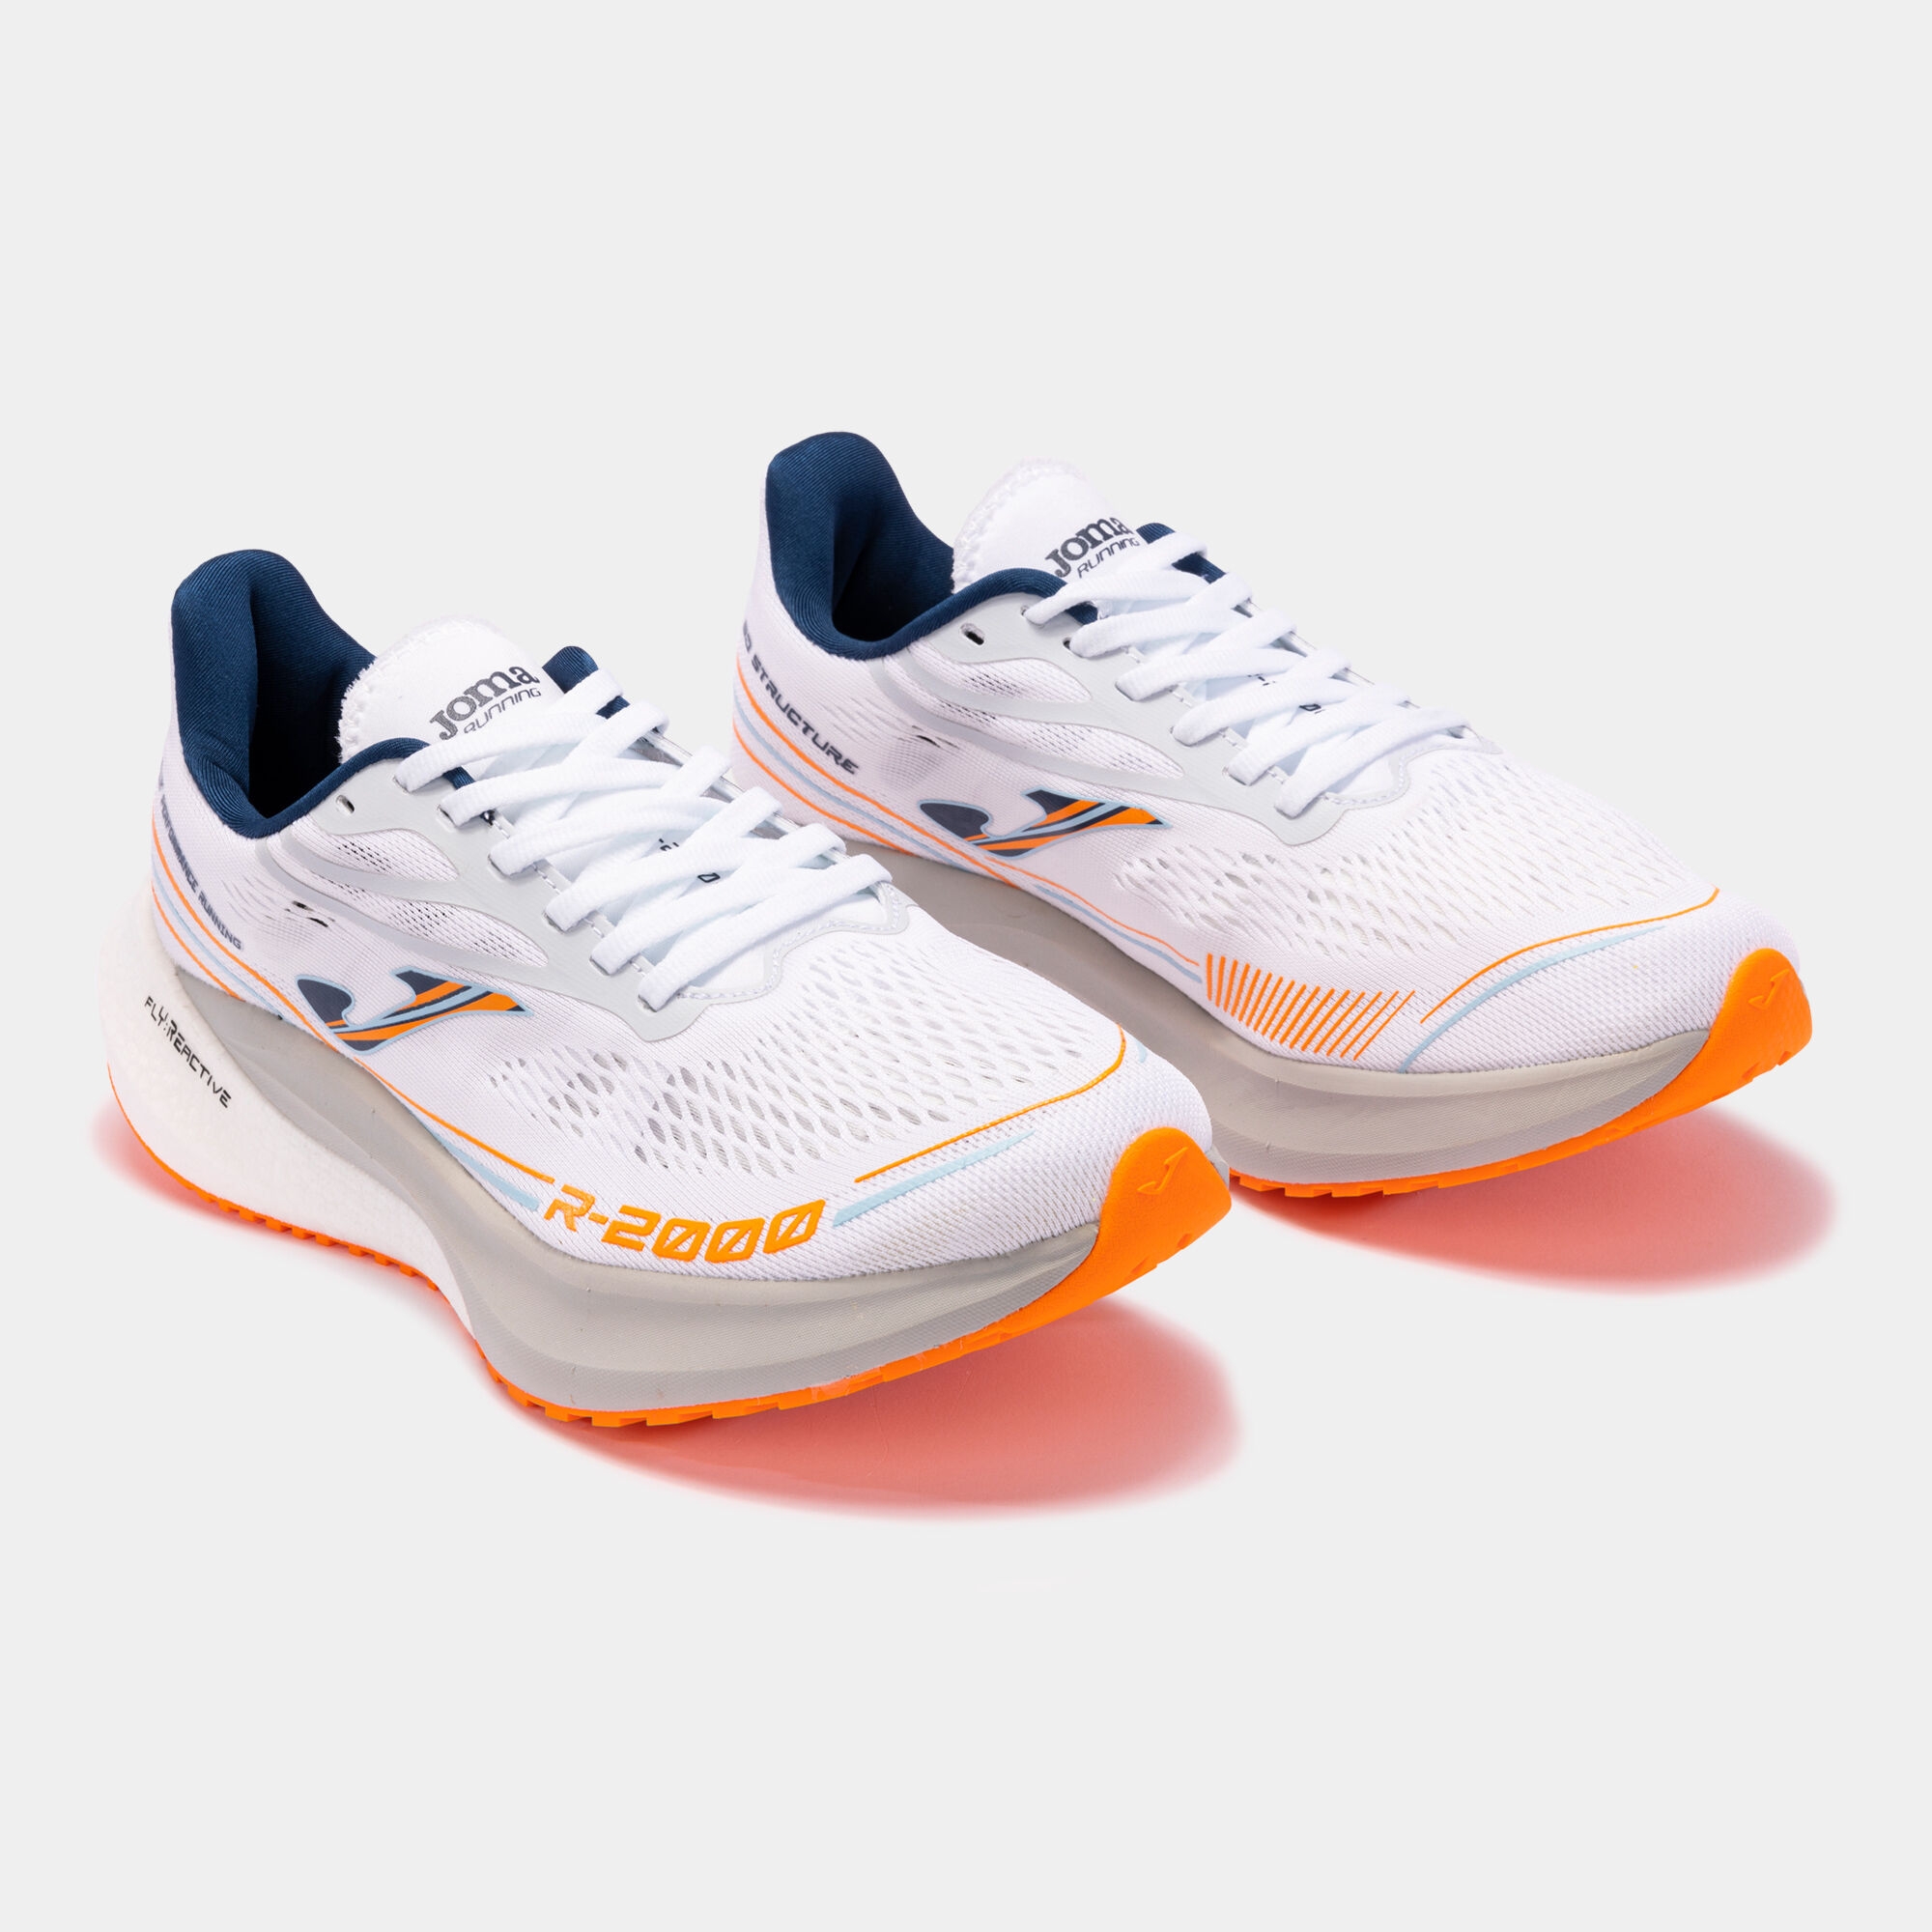 Pantofi sport alergare R.2000 22 bărbaȚi alb portocaliu fosforescent